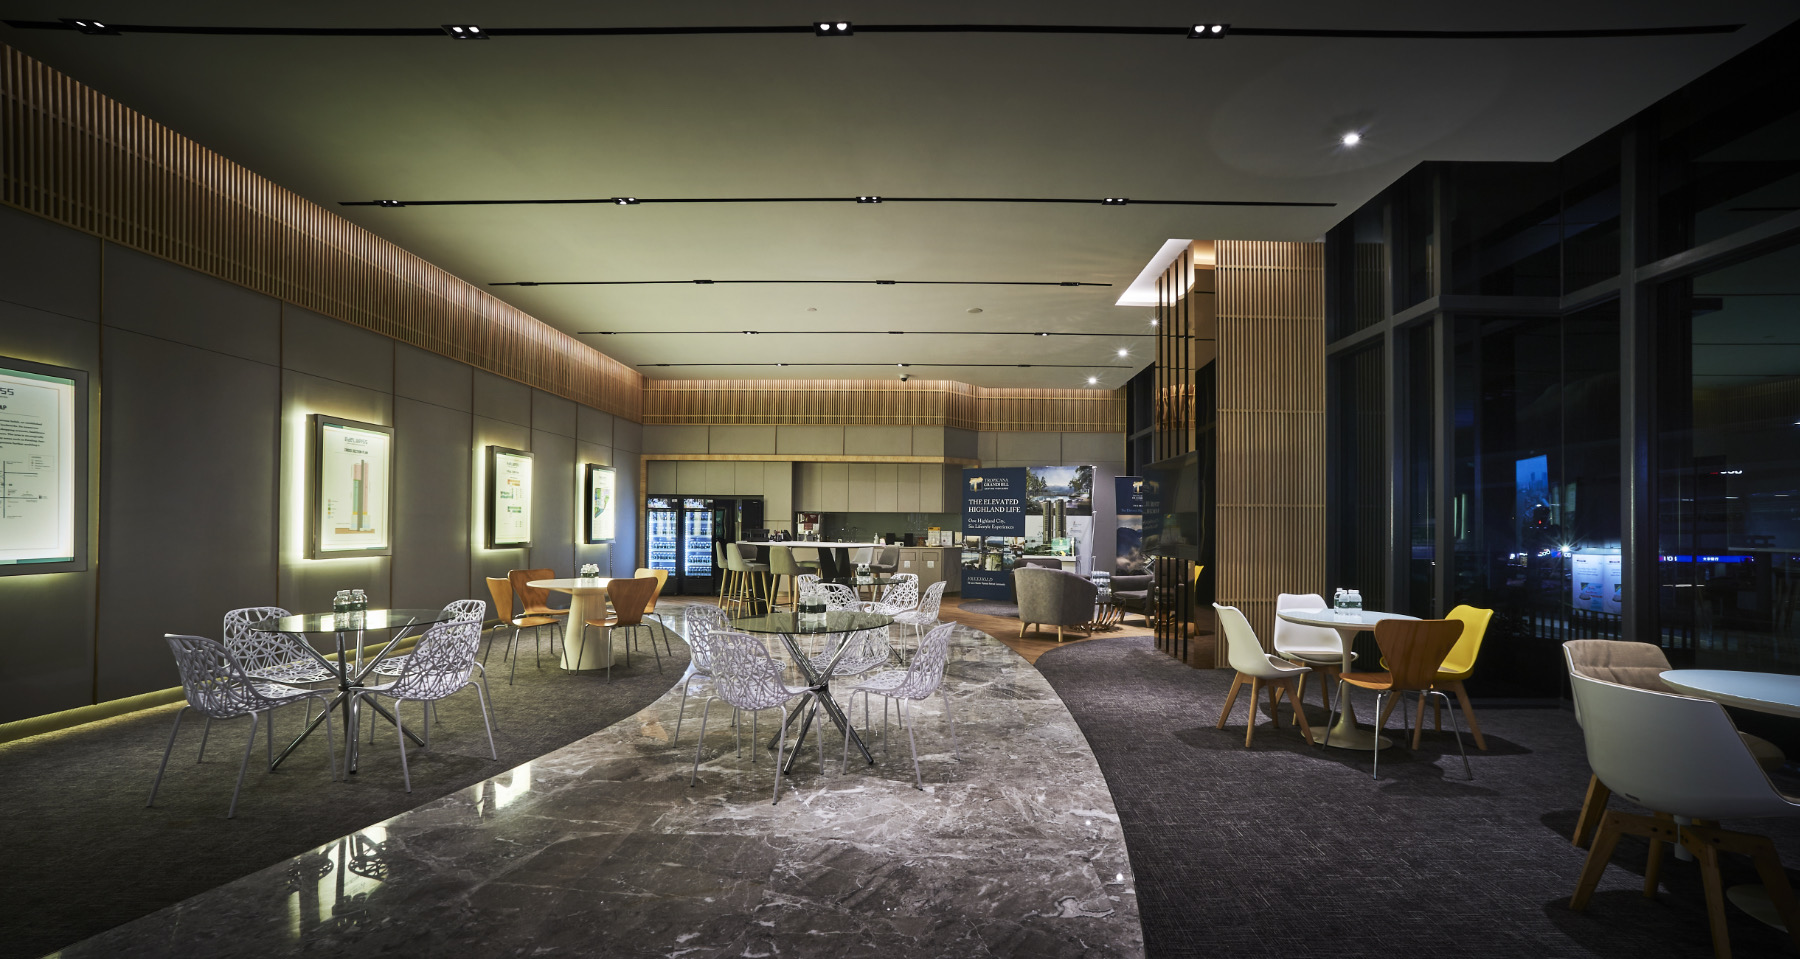 【トロピカーナコーポレーションのオフィスデザイン】- マレーシア, ペタリンジャヤのカフェスペース